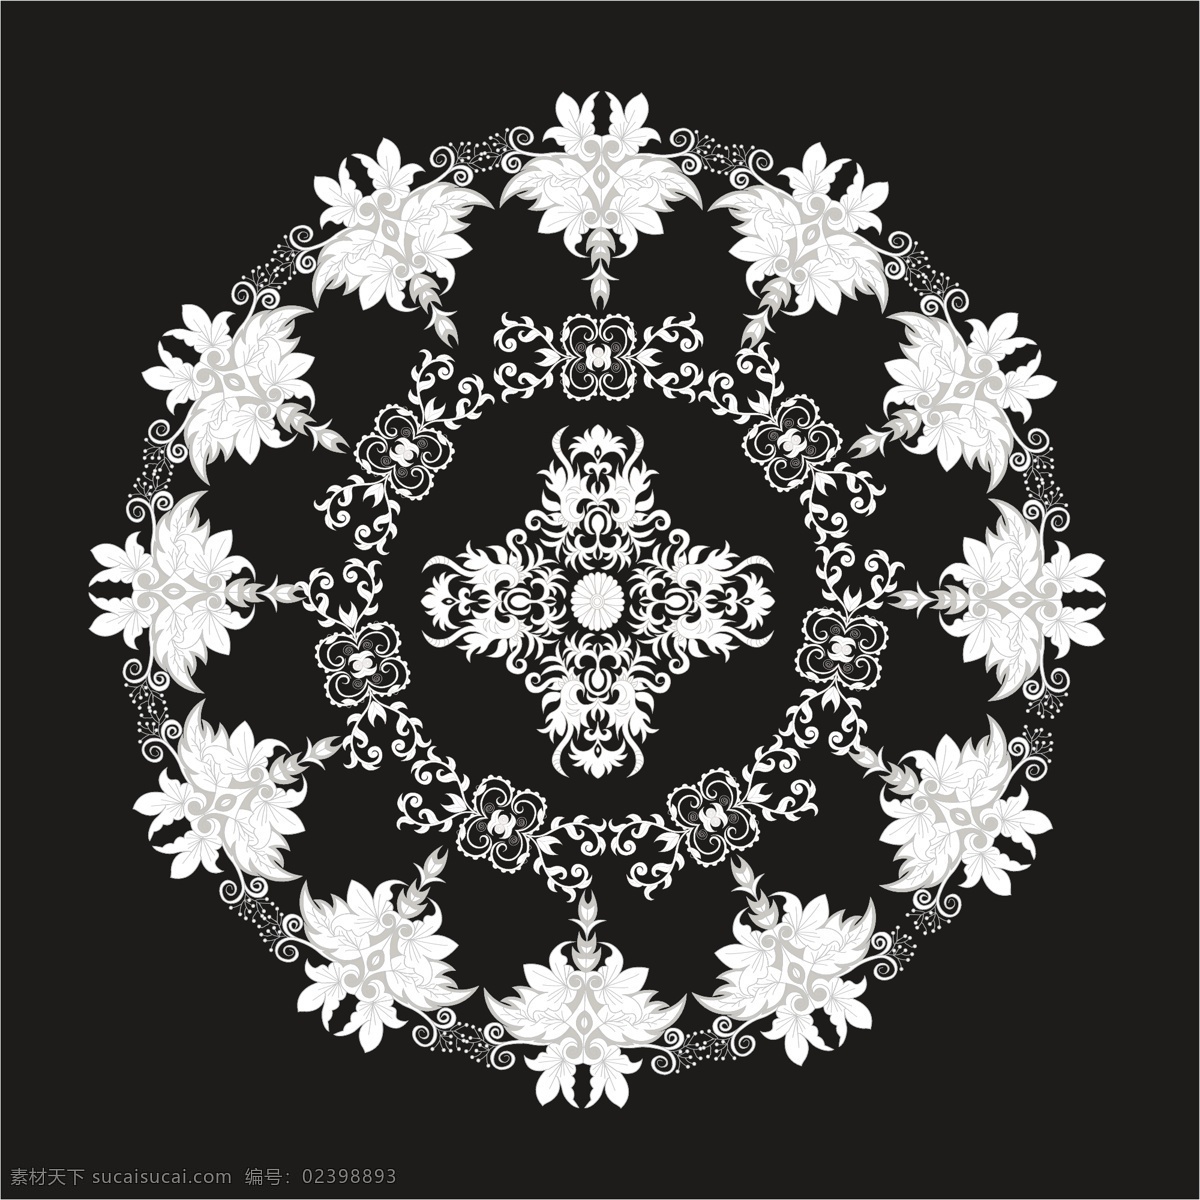 黑白 曼荼罗 背景 花卉 抽象背景 抽象 装饰 花卉背景 墙纸 黑色 阿拉伯 印度 形状 花背景 伊斯兰教 白色 花卉饰品